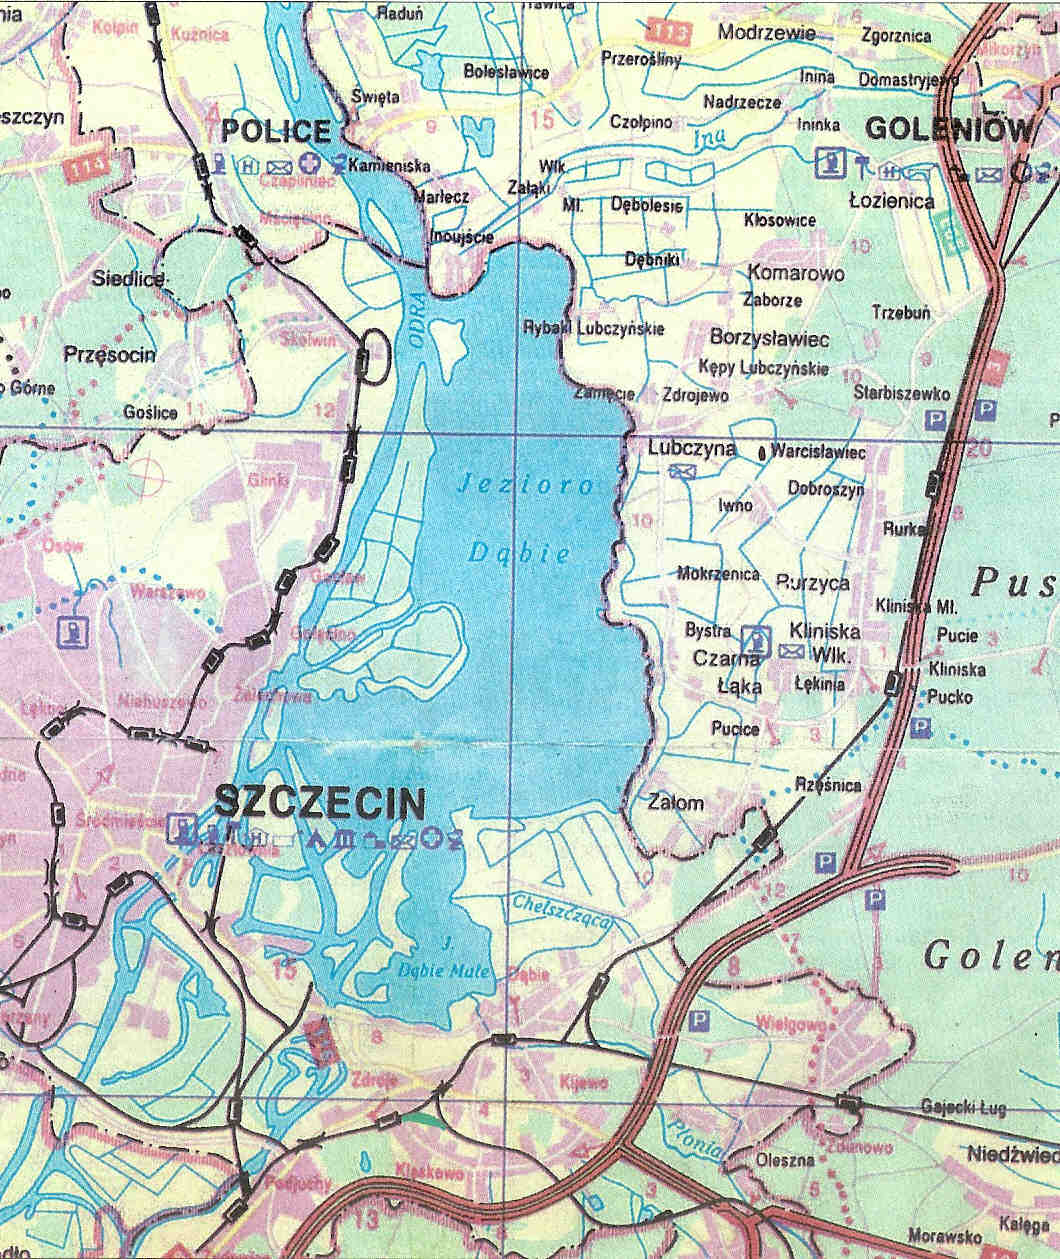 foto: Kurier Szczeciński, Aglomeracja szczecińska z siecią torów kolejowych z zaznaczonym projektowanym łącznikiem w Zdrojach.